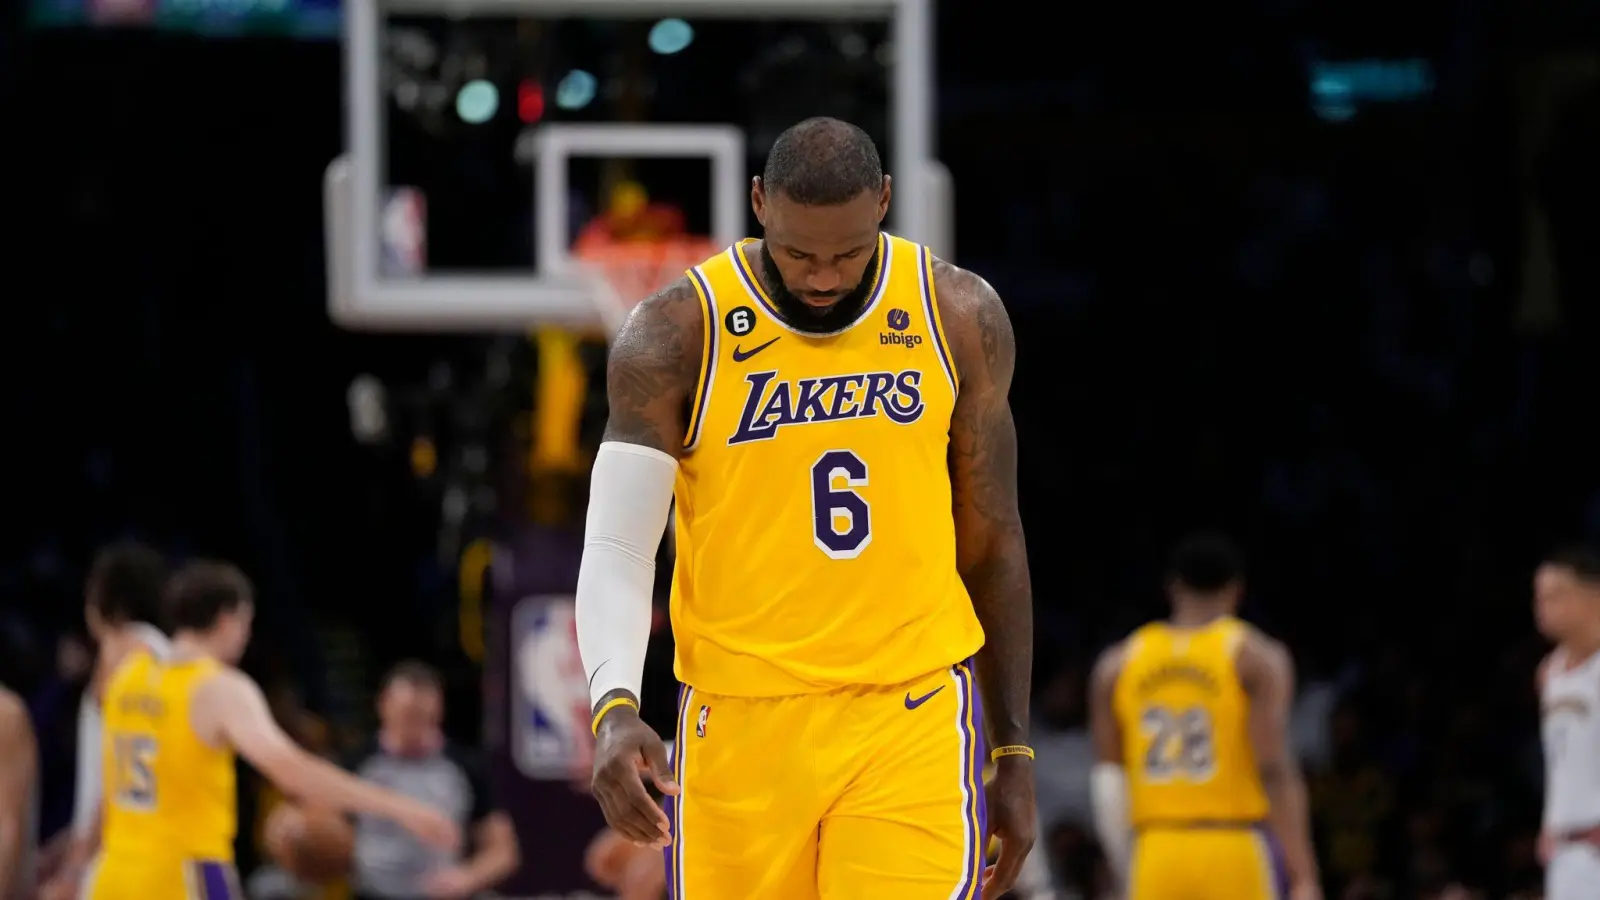 LeBron James war nach dem Playoff-Aus der Los Angeles Lakers enttäuscht. (Foto: Ashley Landis/AP)